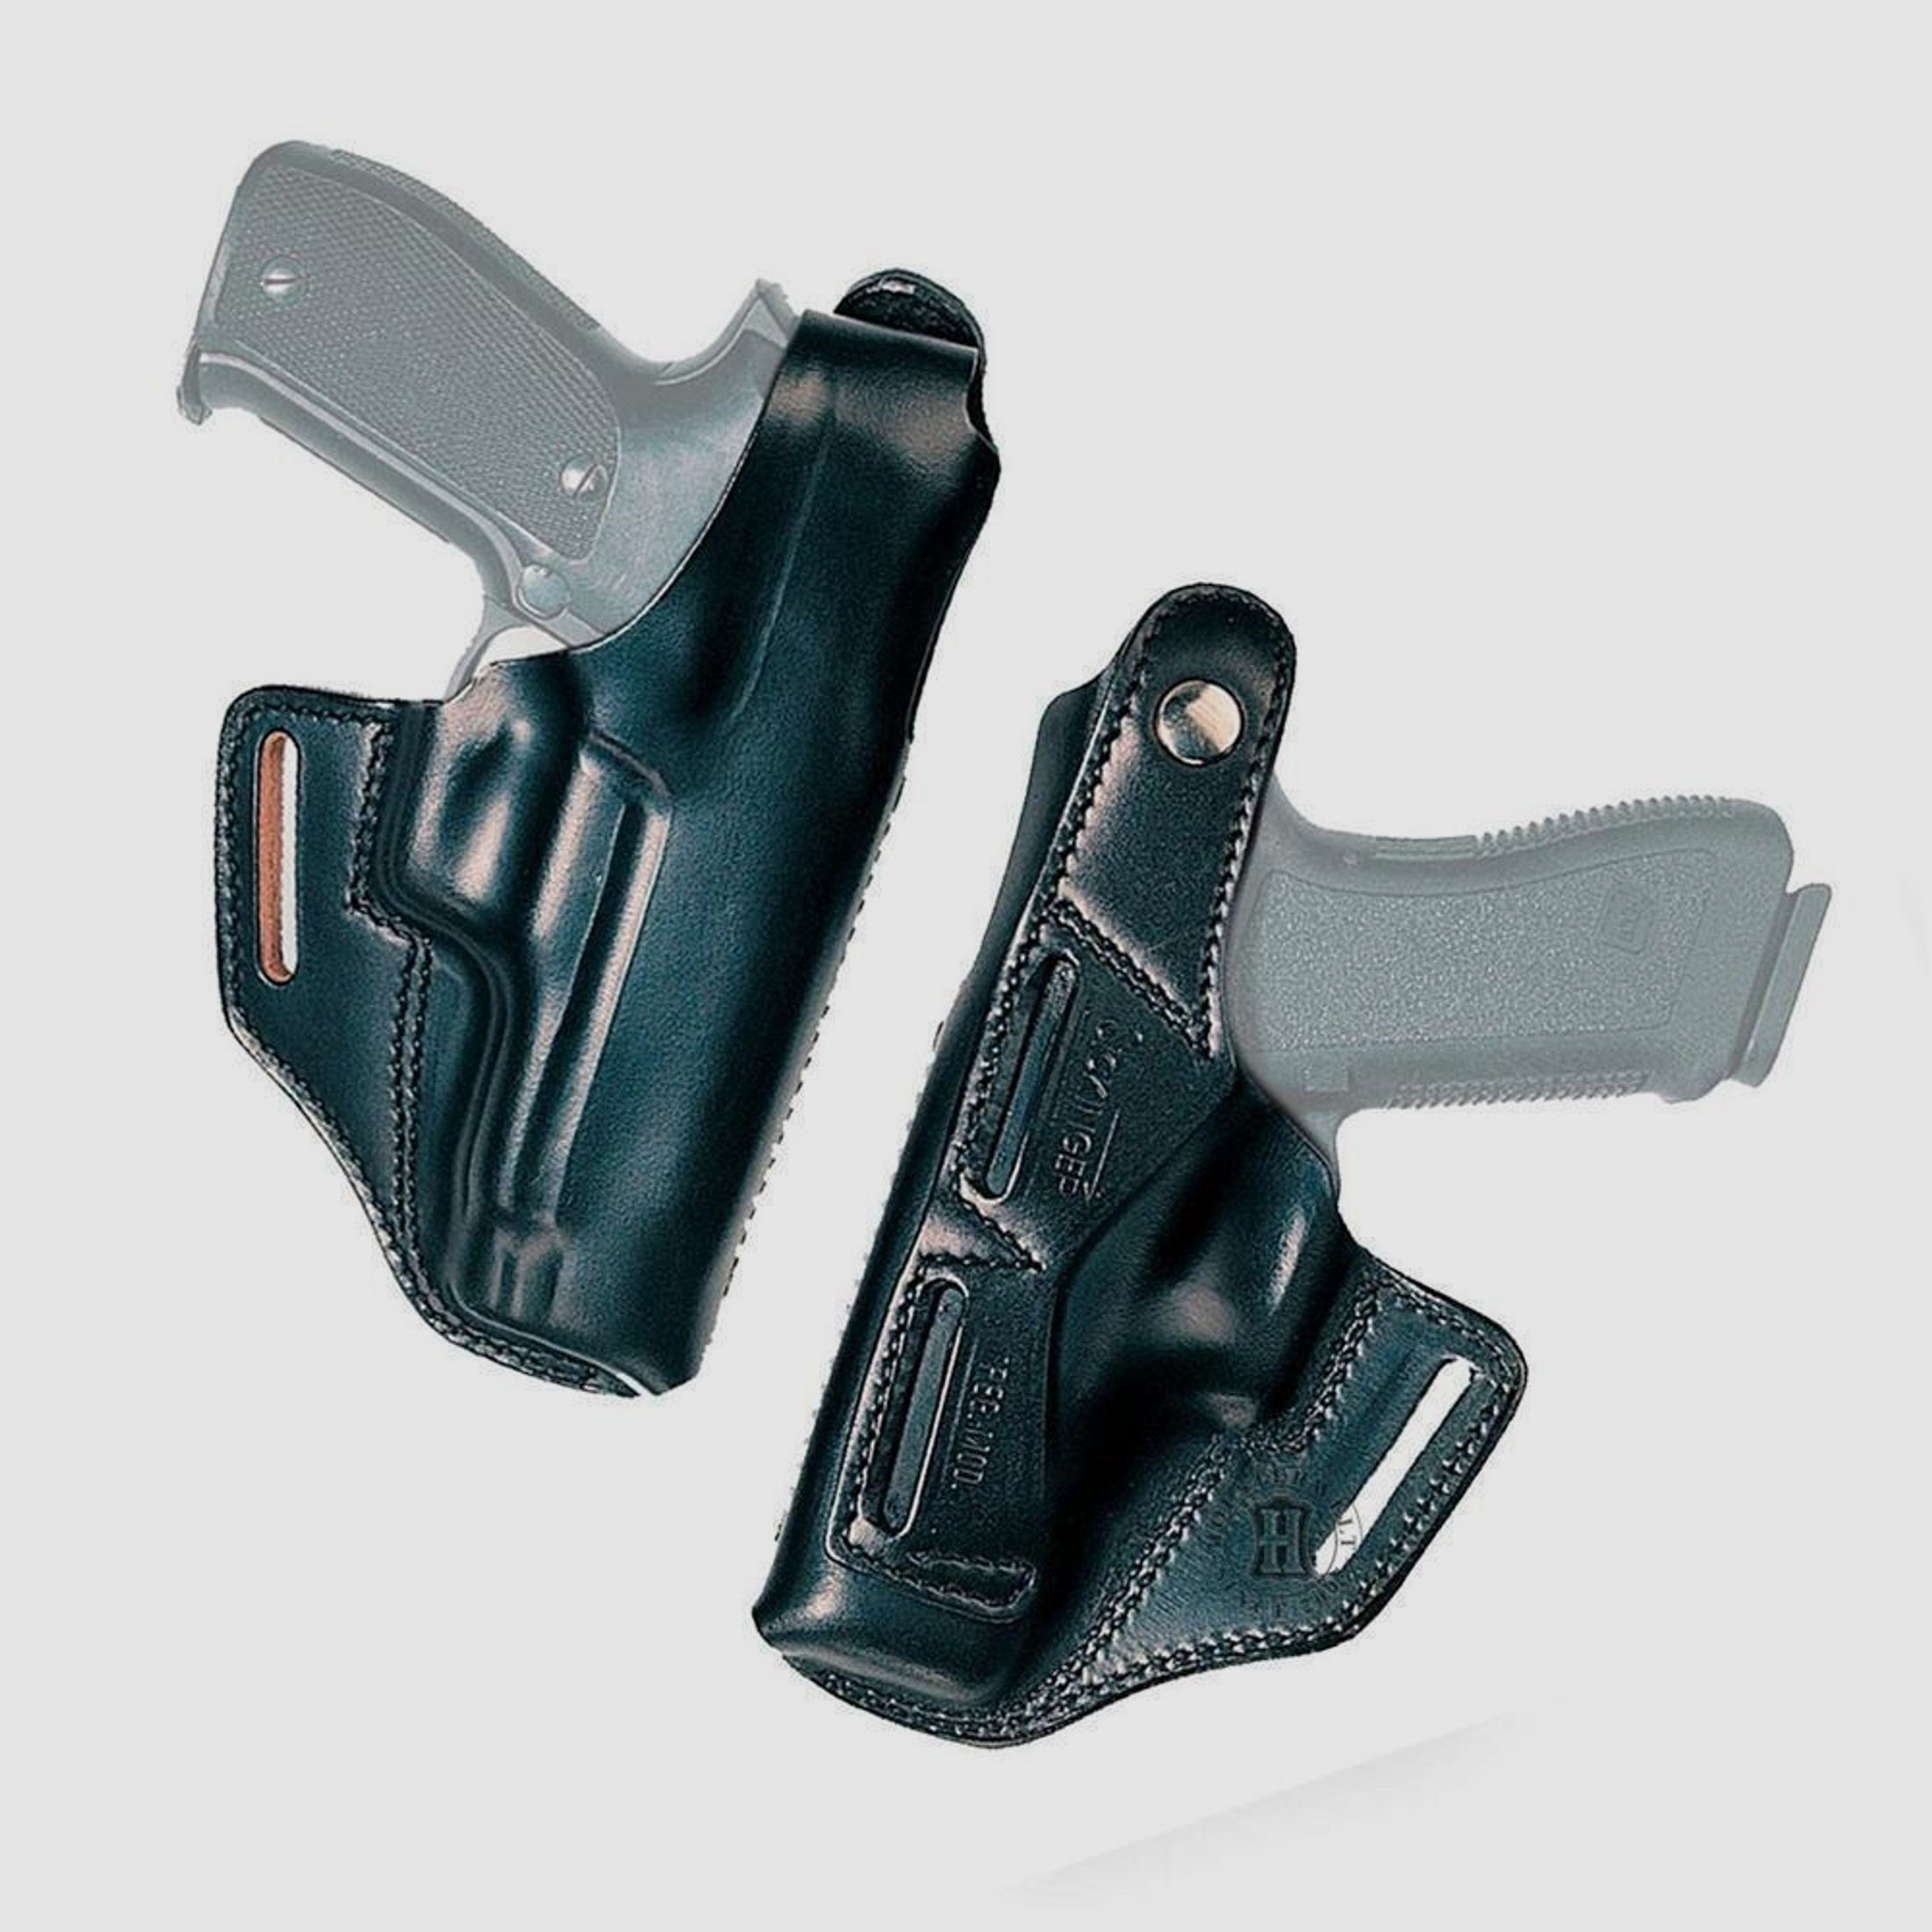 Gürtelholster BELT MASTER Glock 36-Linkshänder-Braun